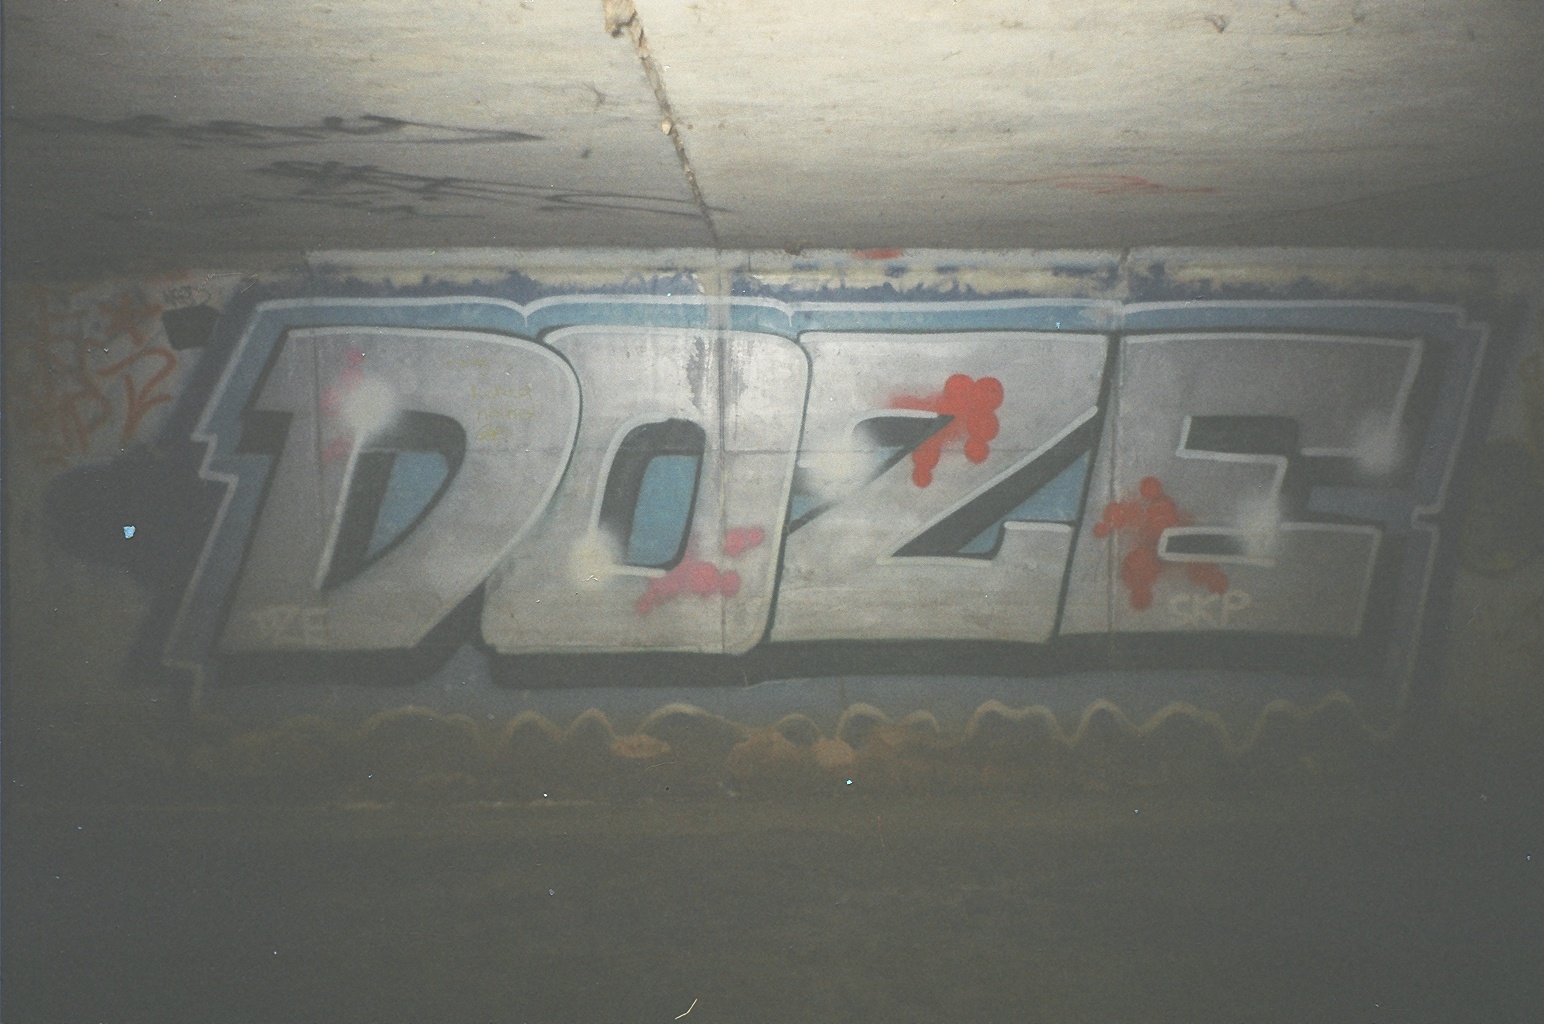 doze